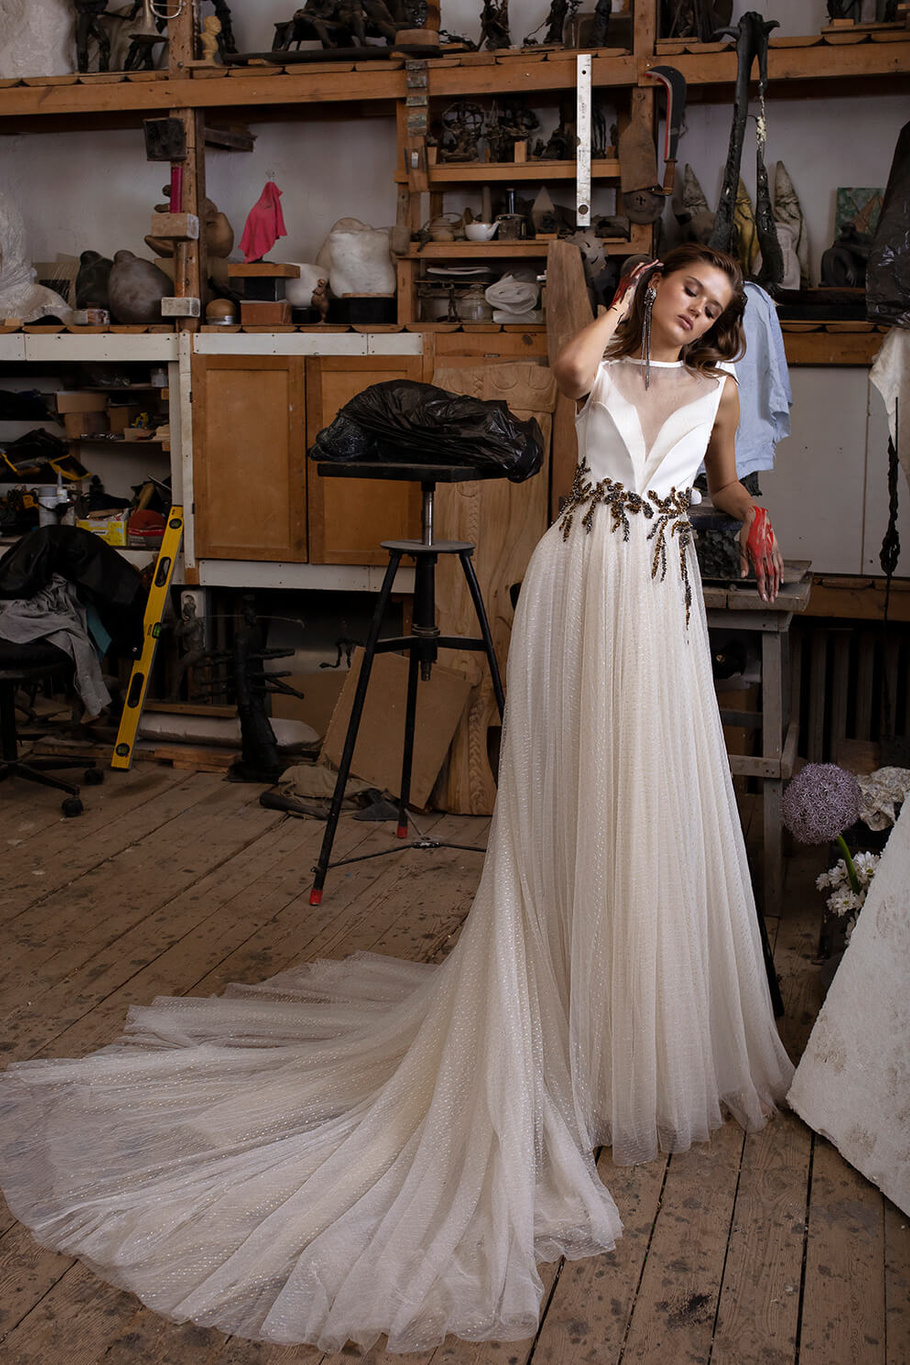 Купить свадебное платье «Амия» Рара Авис из коллекции Шайн Брайт 2020 года в интернет-магазине